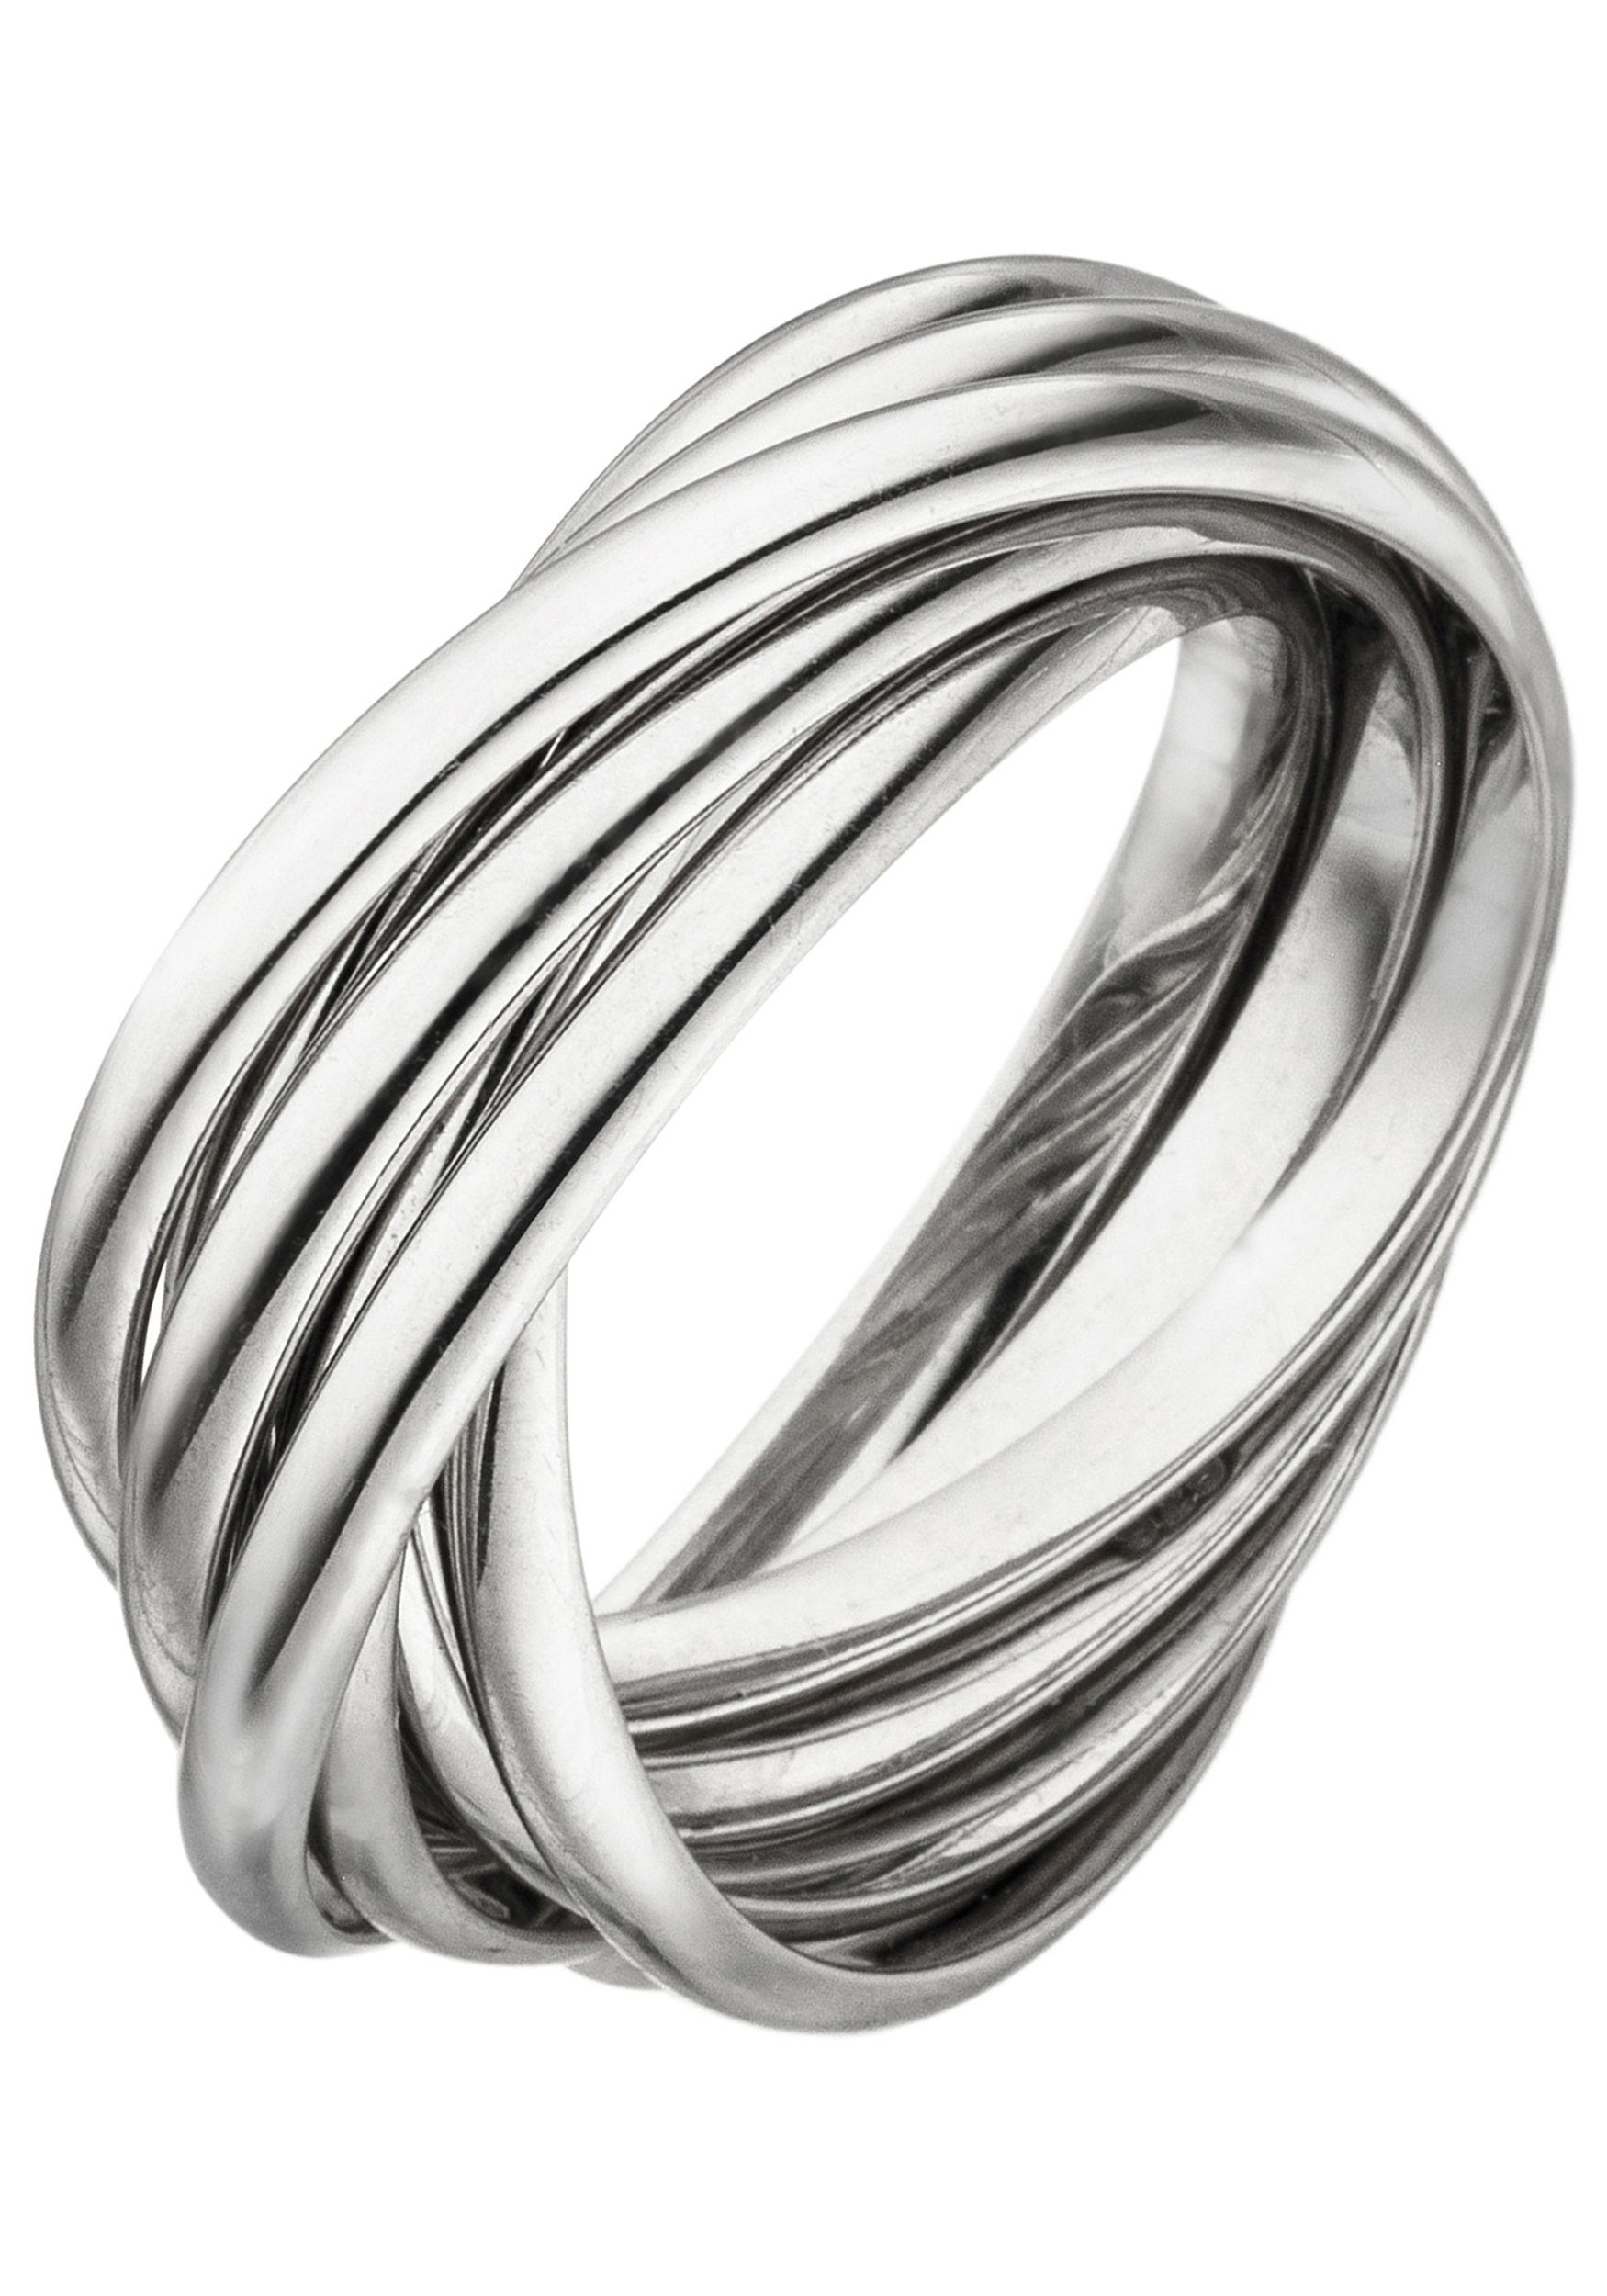 JOBO Fingerring, verschlungen 925 Silber, Juwelierqualität der Marke JOBO